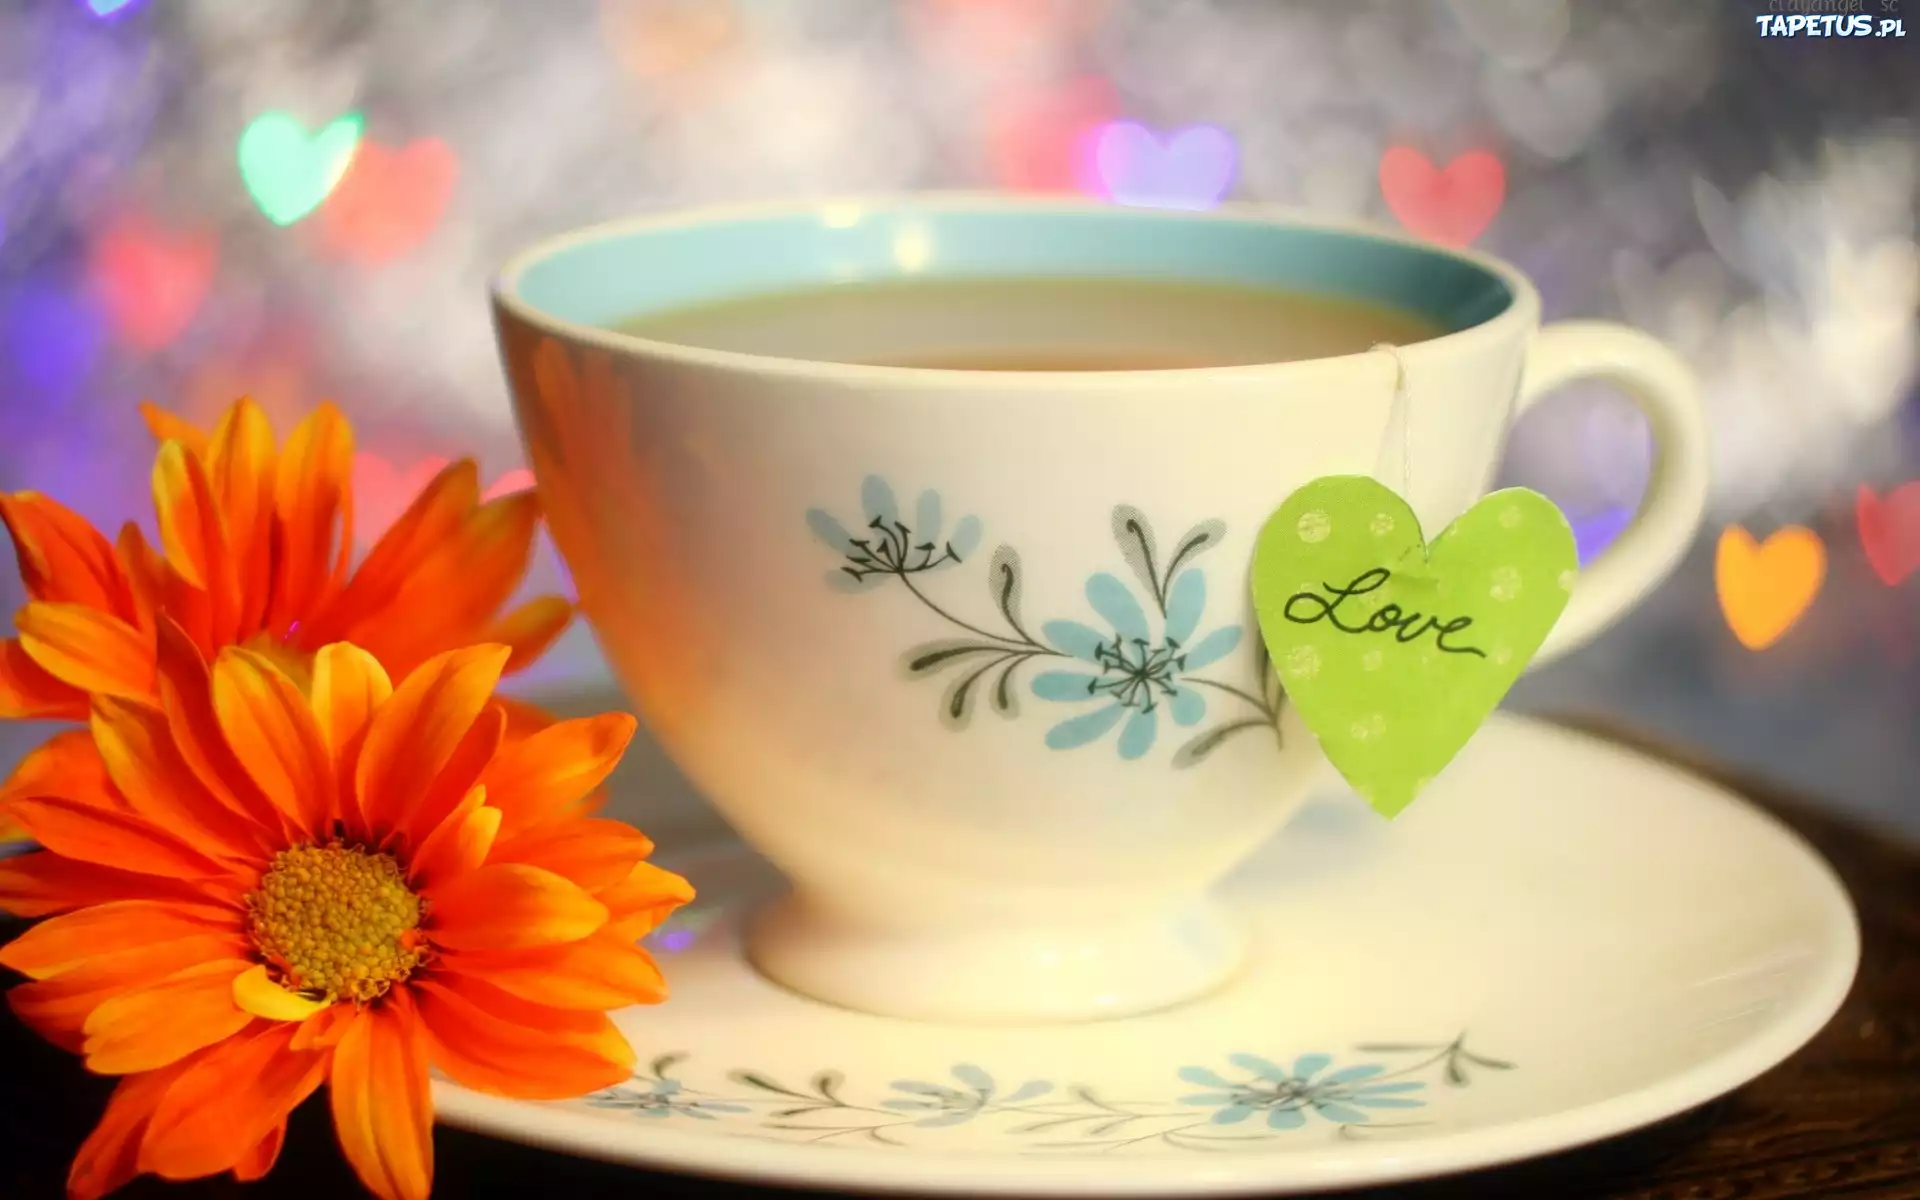 Доброго утречка с красивыми надписями. Цветы в кружке. Чай с цветами. Чашка чая. Доброе утро с чаем.